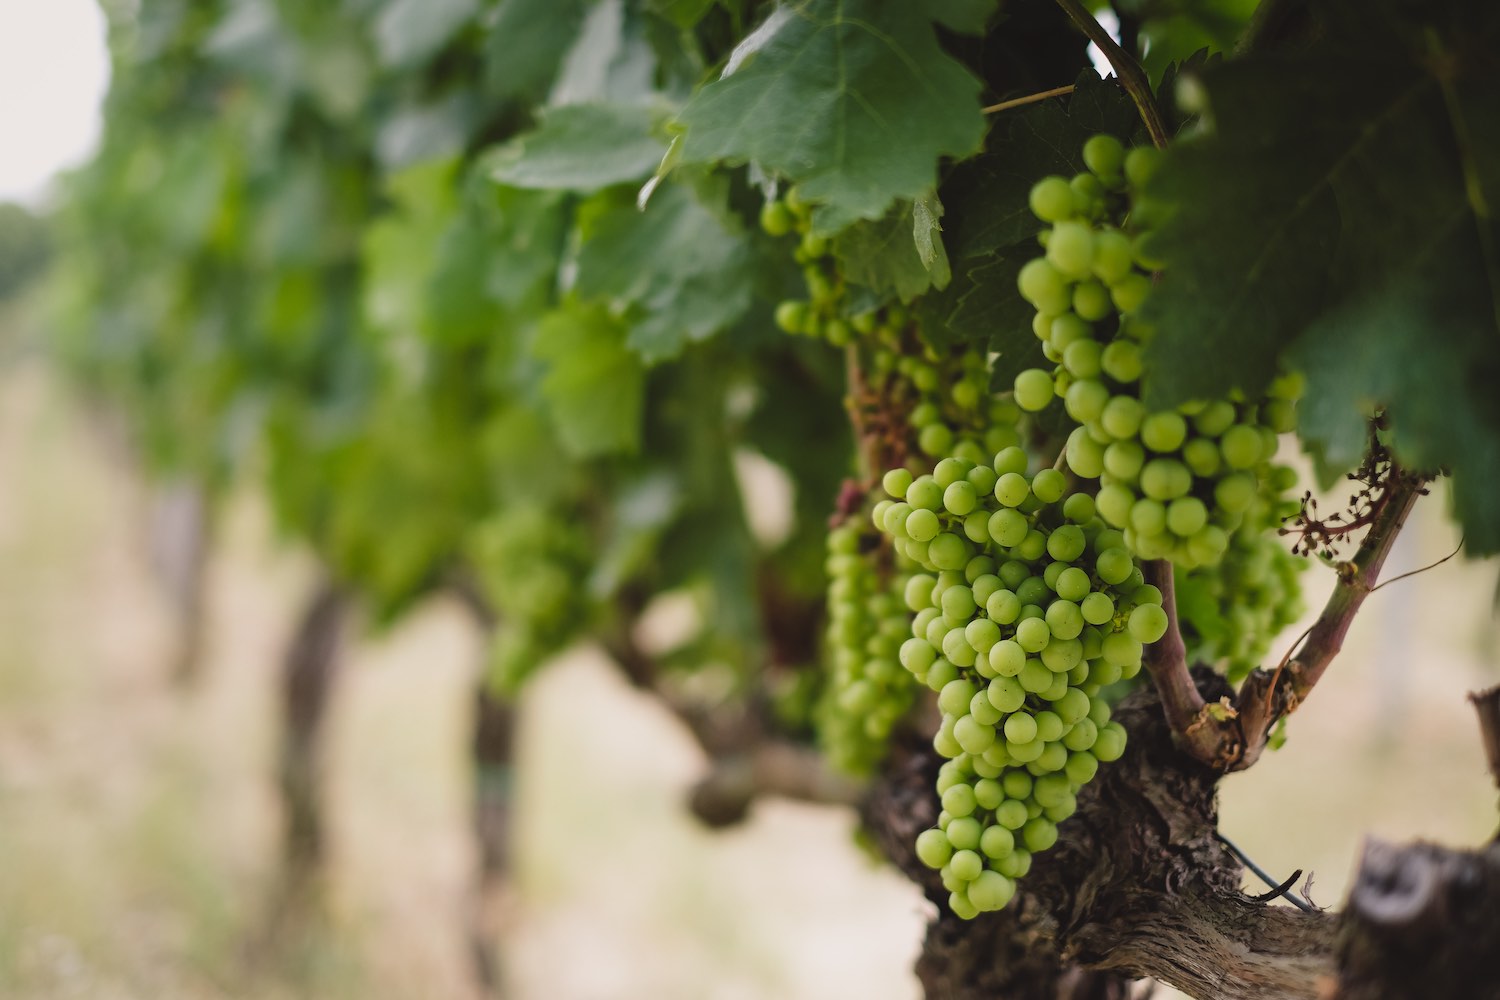 Metinella è un'azienda vitivinicola a Montepulciano. Aperta da pochissimo tempo ha già ottenuto riconoscimenti internazionali per i suoi vini